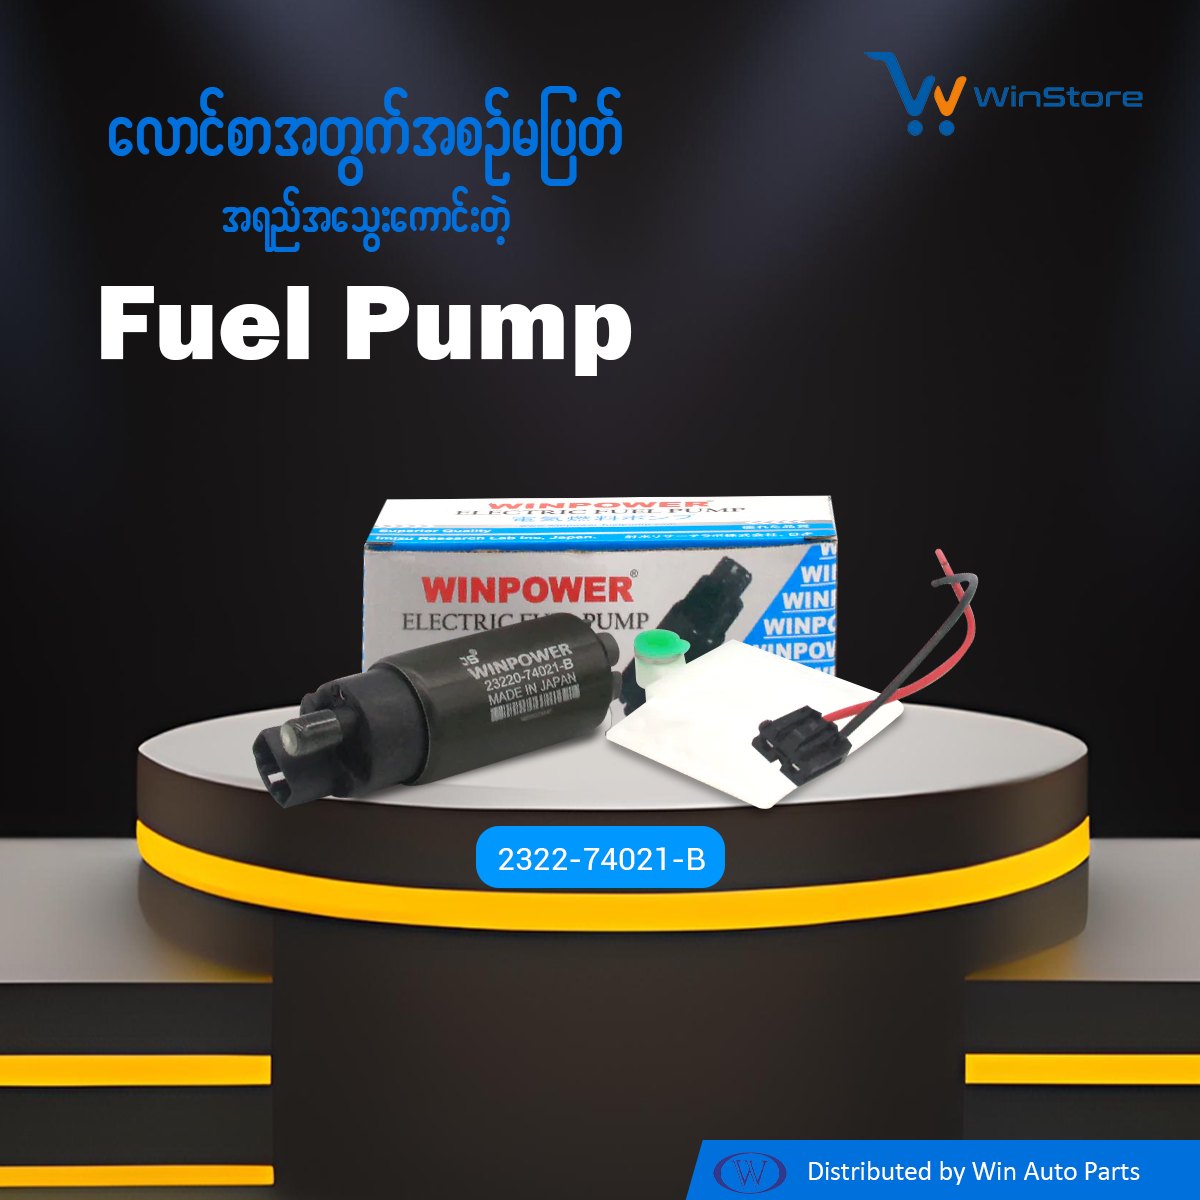 In-Tank Fuel Pump, (Small) WINPOWER, Big Pin, 23220-74021-B, WF-3801 (003427)